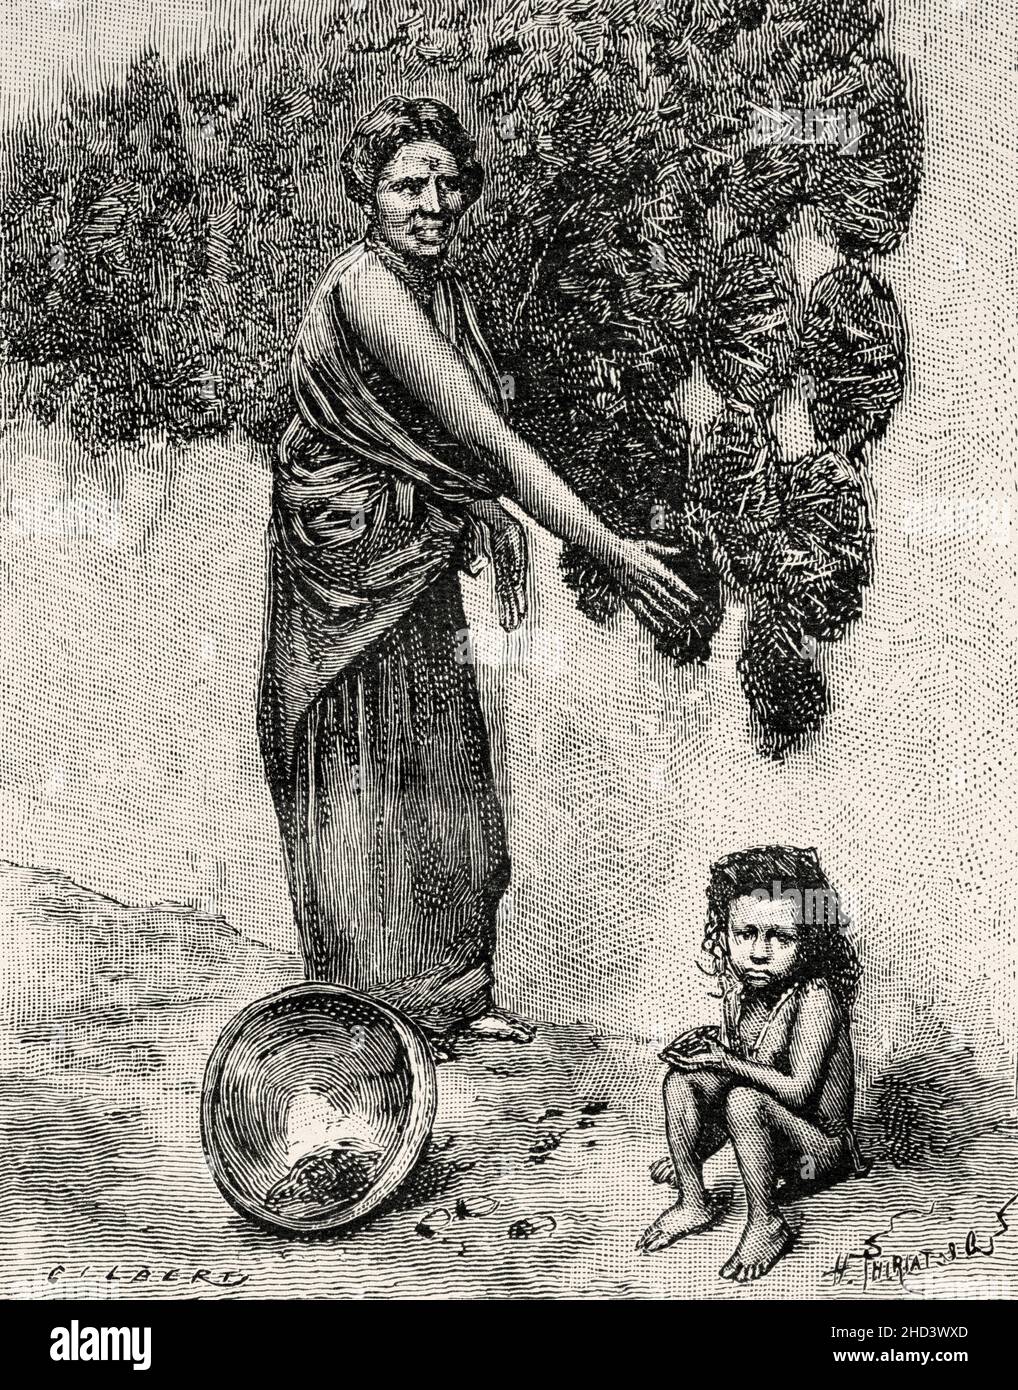 Hindu-Frau, die Kuhmist auf die Wand eines Hauses drückt, Indien, Asien. Alte, gravierte Illustration aus dem 19th. Jahrhundert von La Nature 1885 Stockfoto